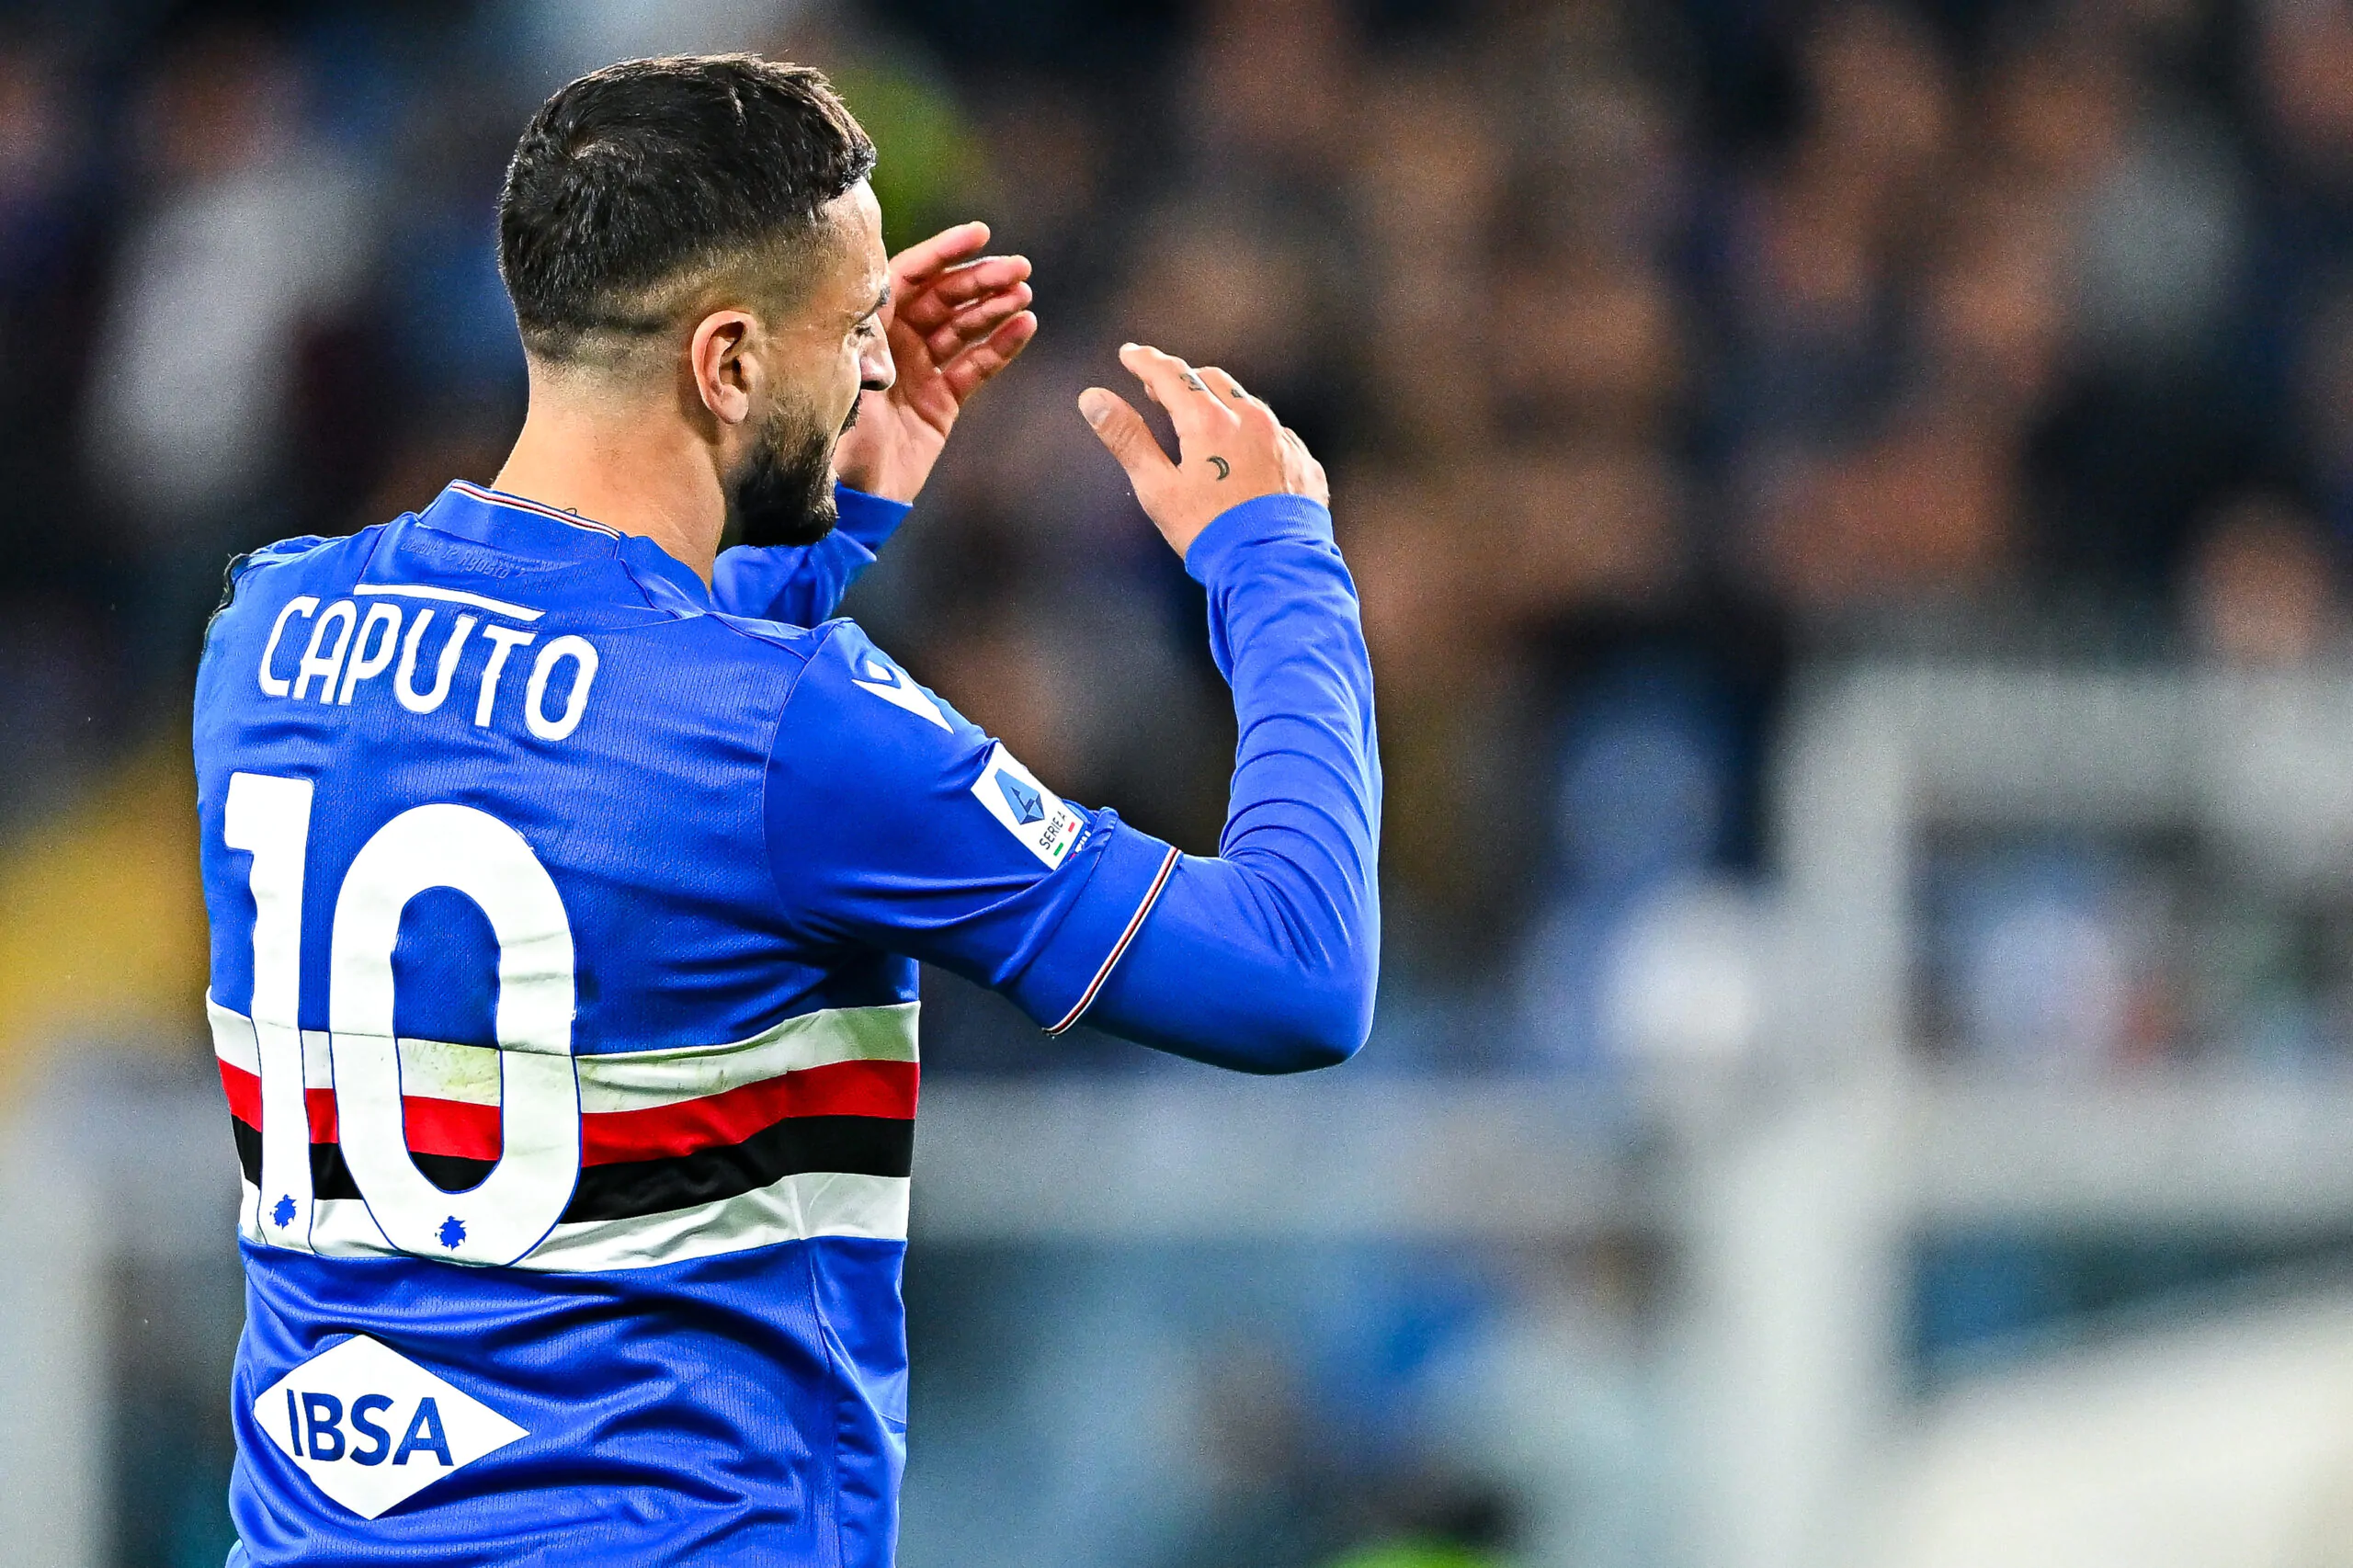 Caputo lascia la Sampdoria e resta in Serie A: altri due calciatori coinvolti nell’affare